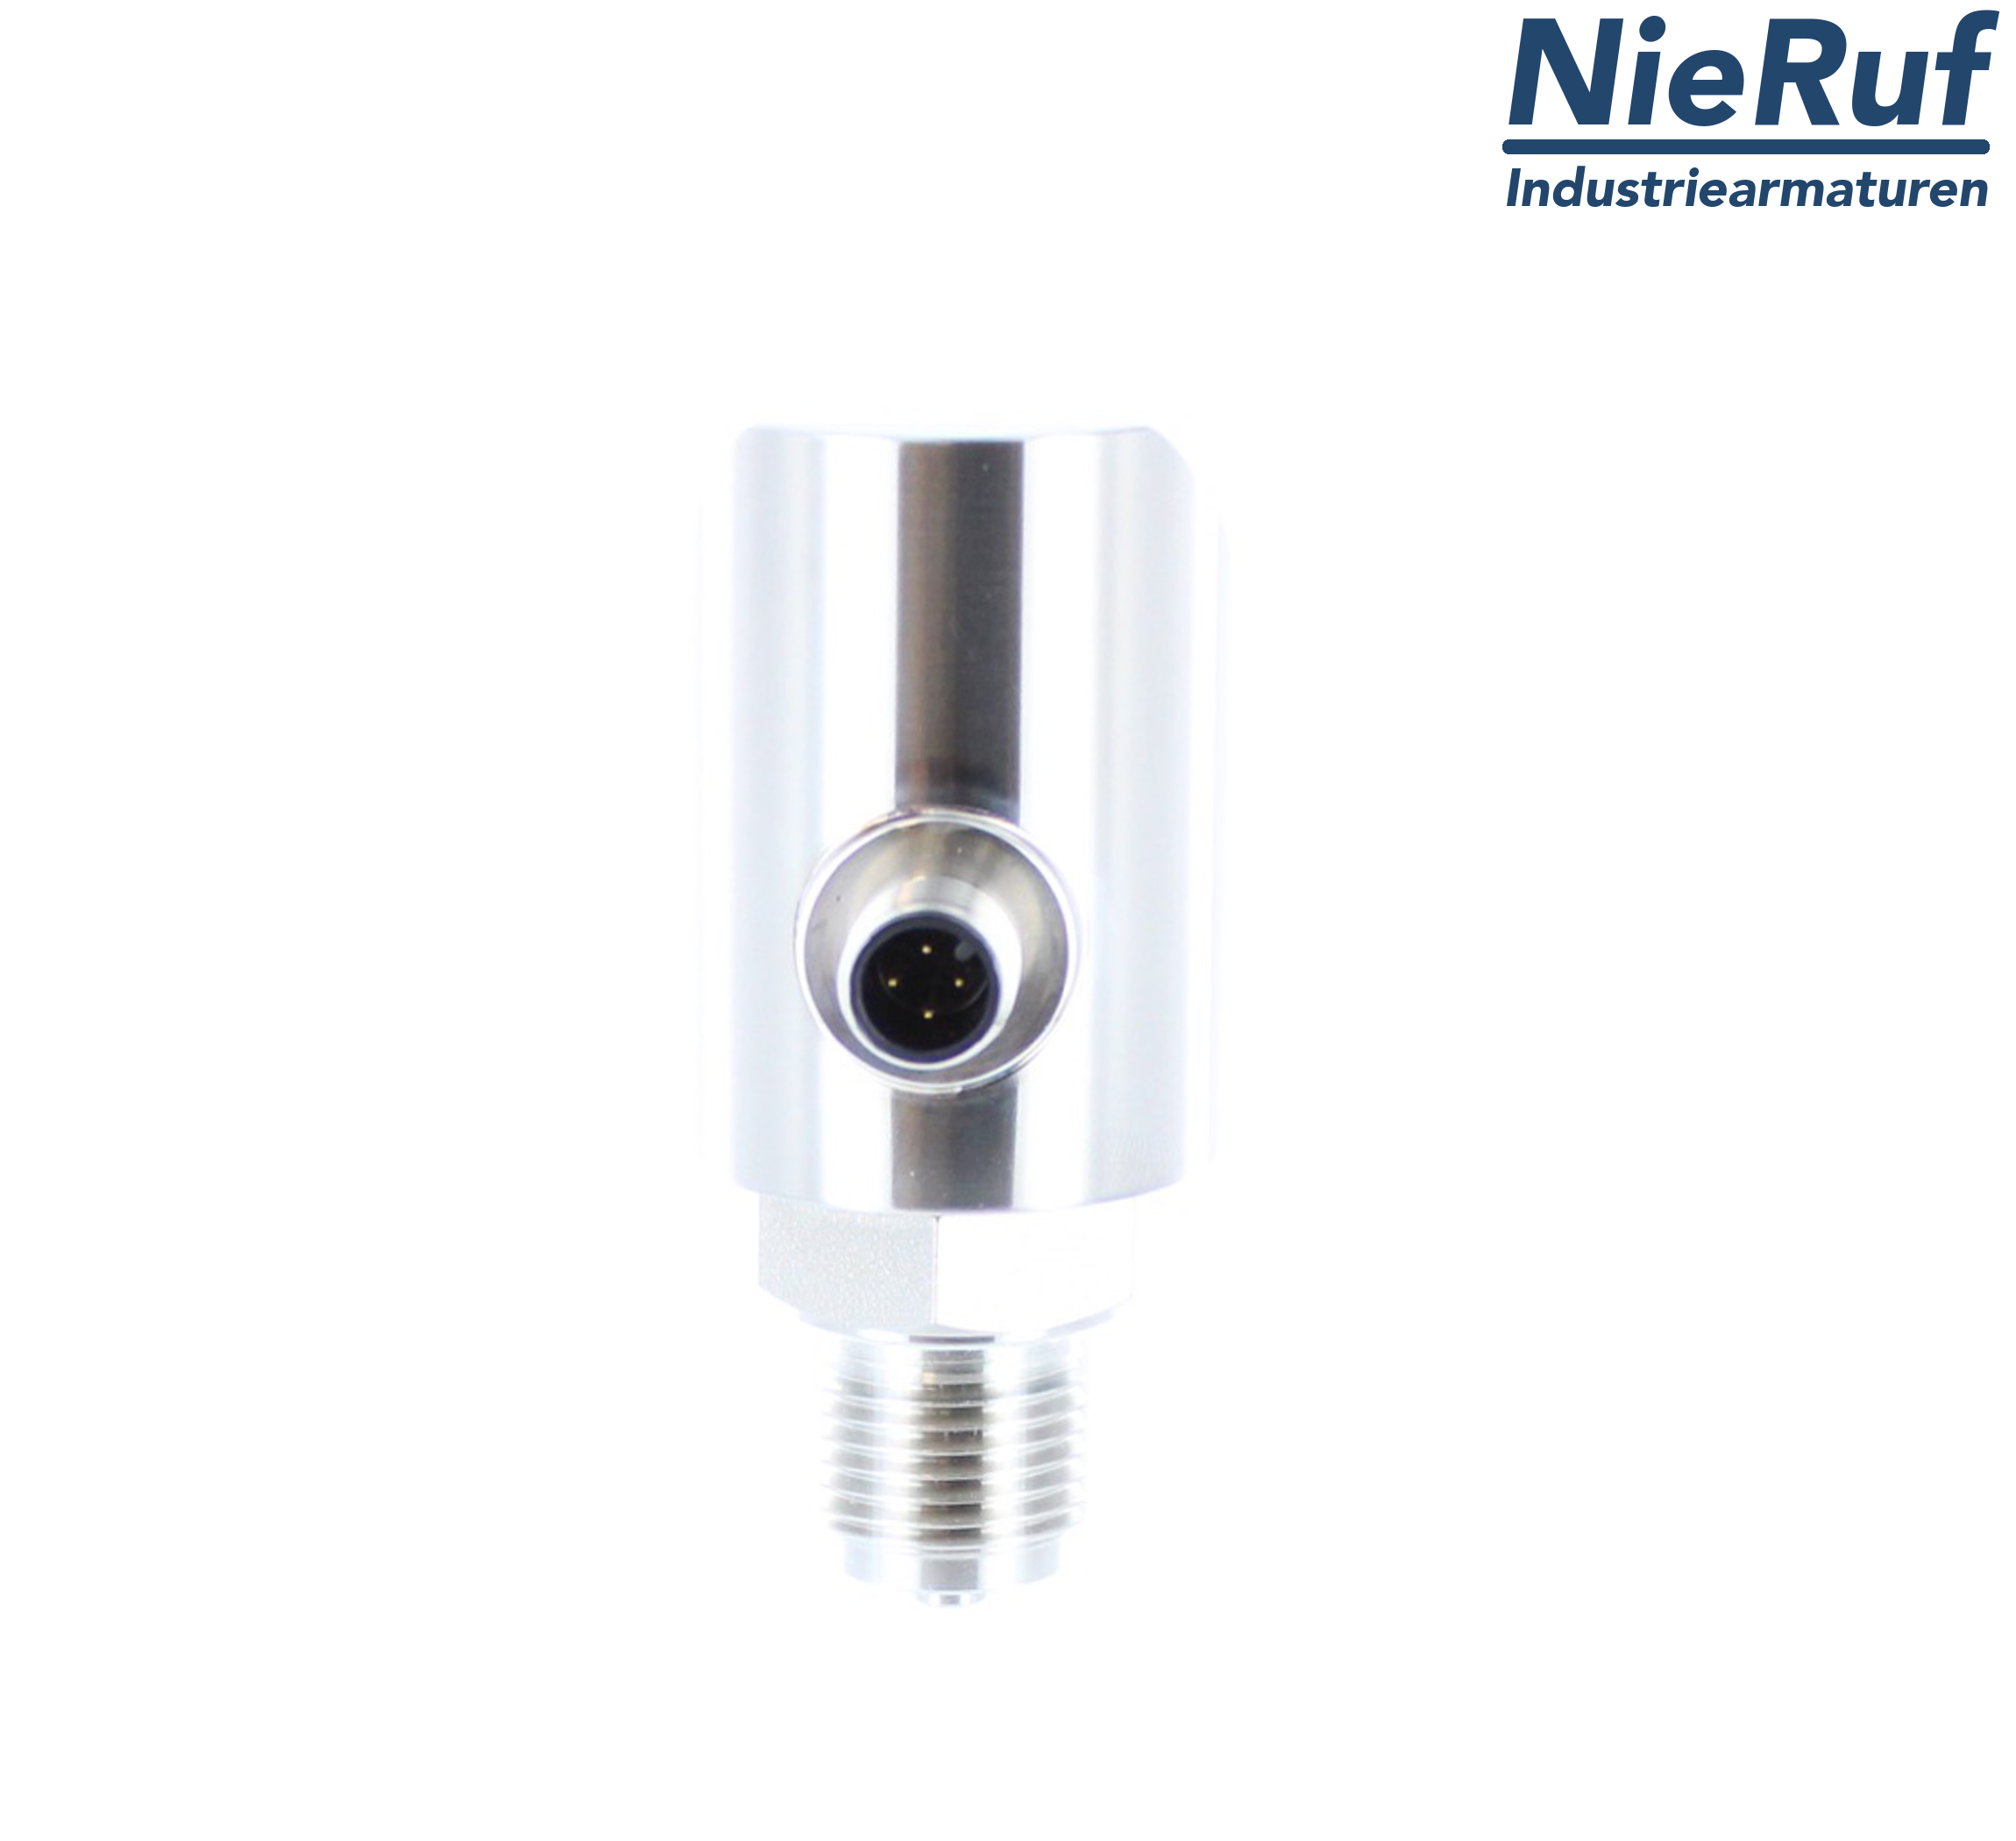 digital pressure sensor G 1/2" B IB 5-wire: 2xPNP, 1x4 - 20mA FPM 0,0 - 25,0 bar